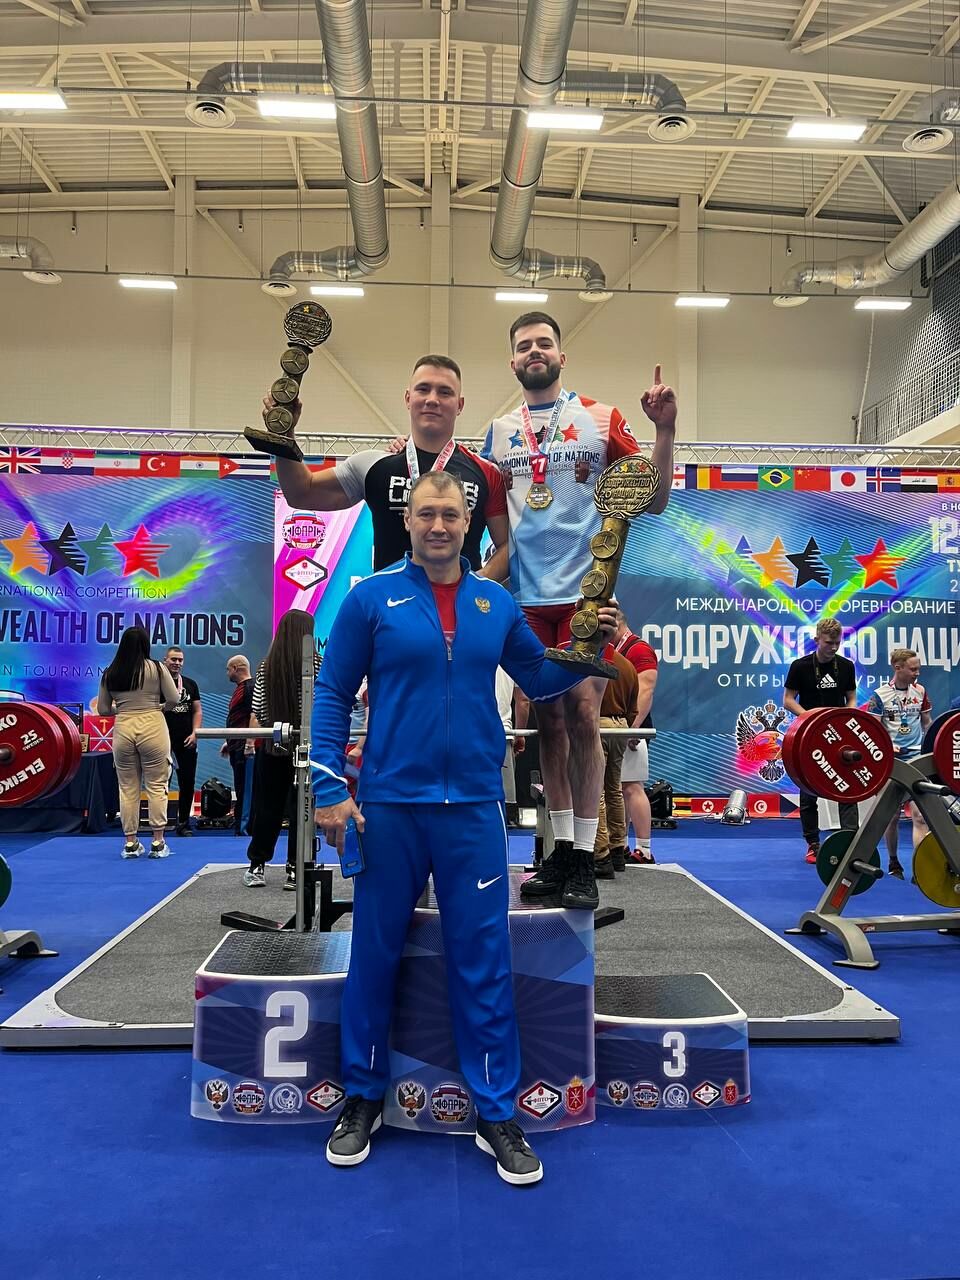 Спортсмены из Челнов стали первыми на международном турнире по пауэрлифтингу